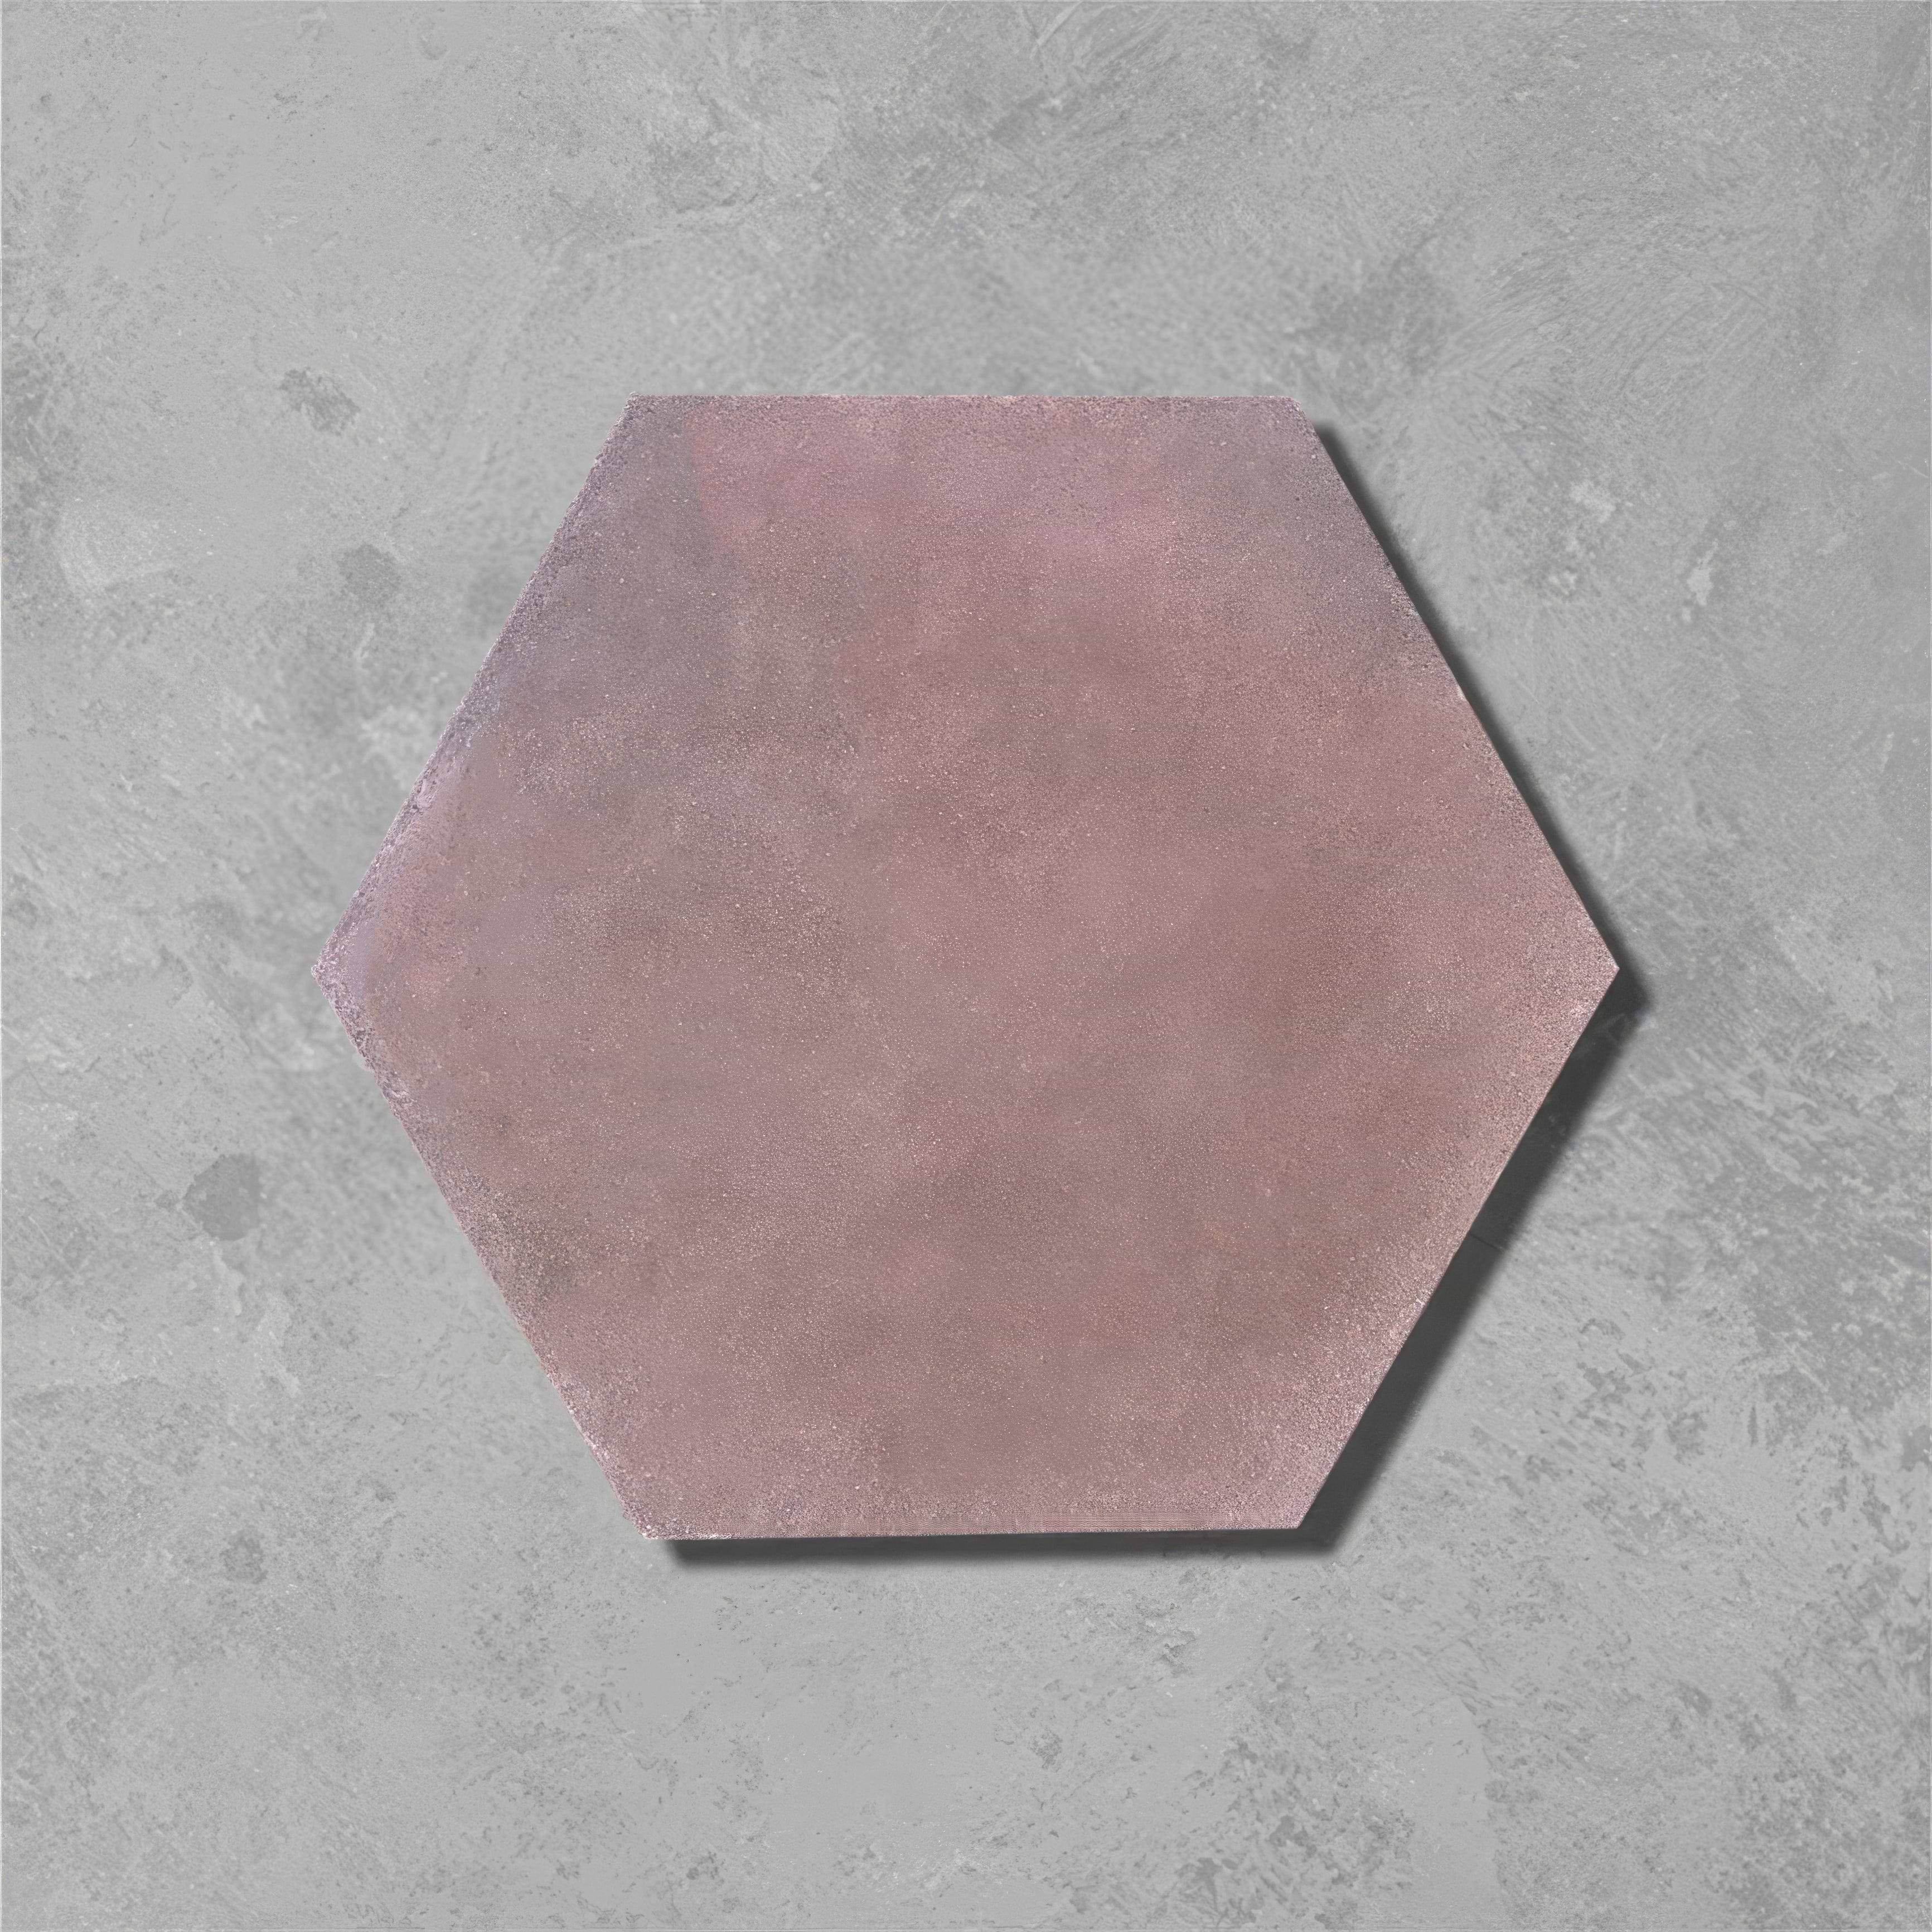 Leather Hexagonal Tile - Hyperion Tiles